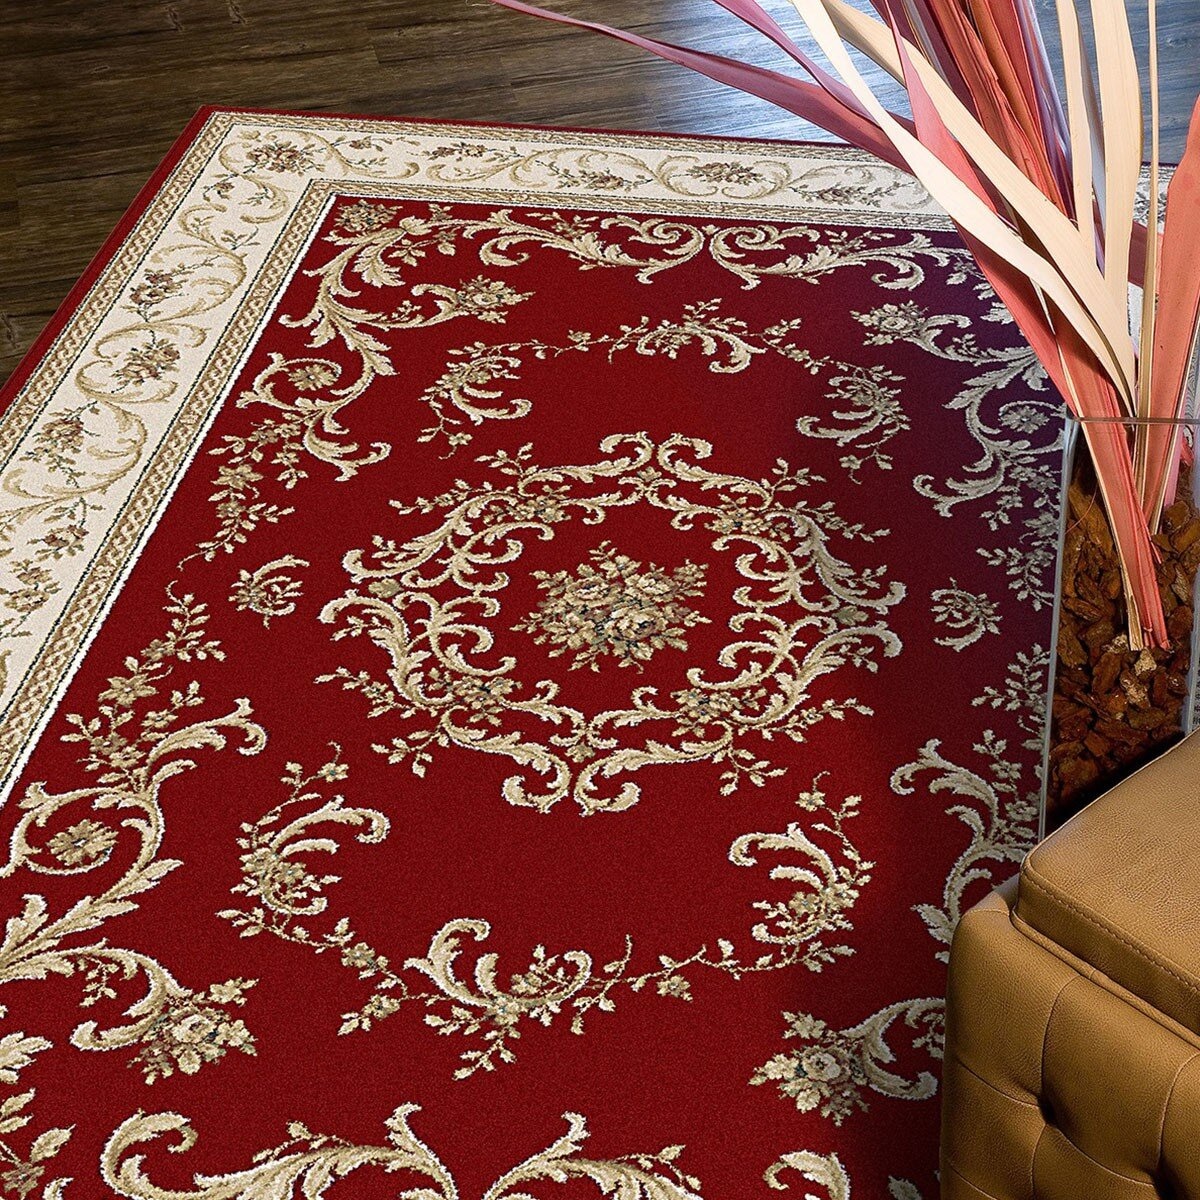 土耳其進口布爾薩皇室御用地毯 歐廷紅 200公分 X 290公分